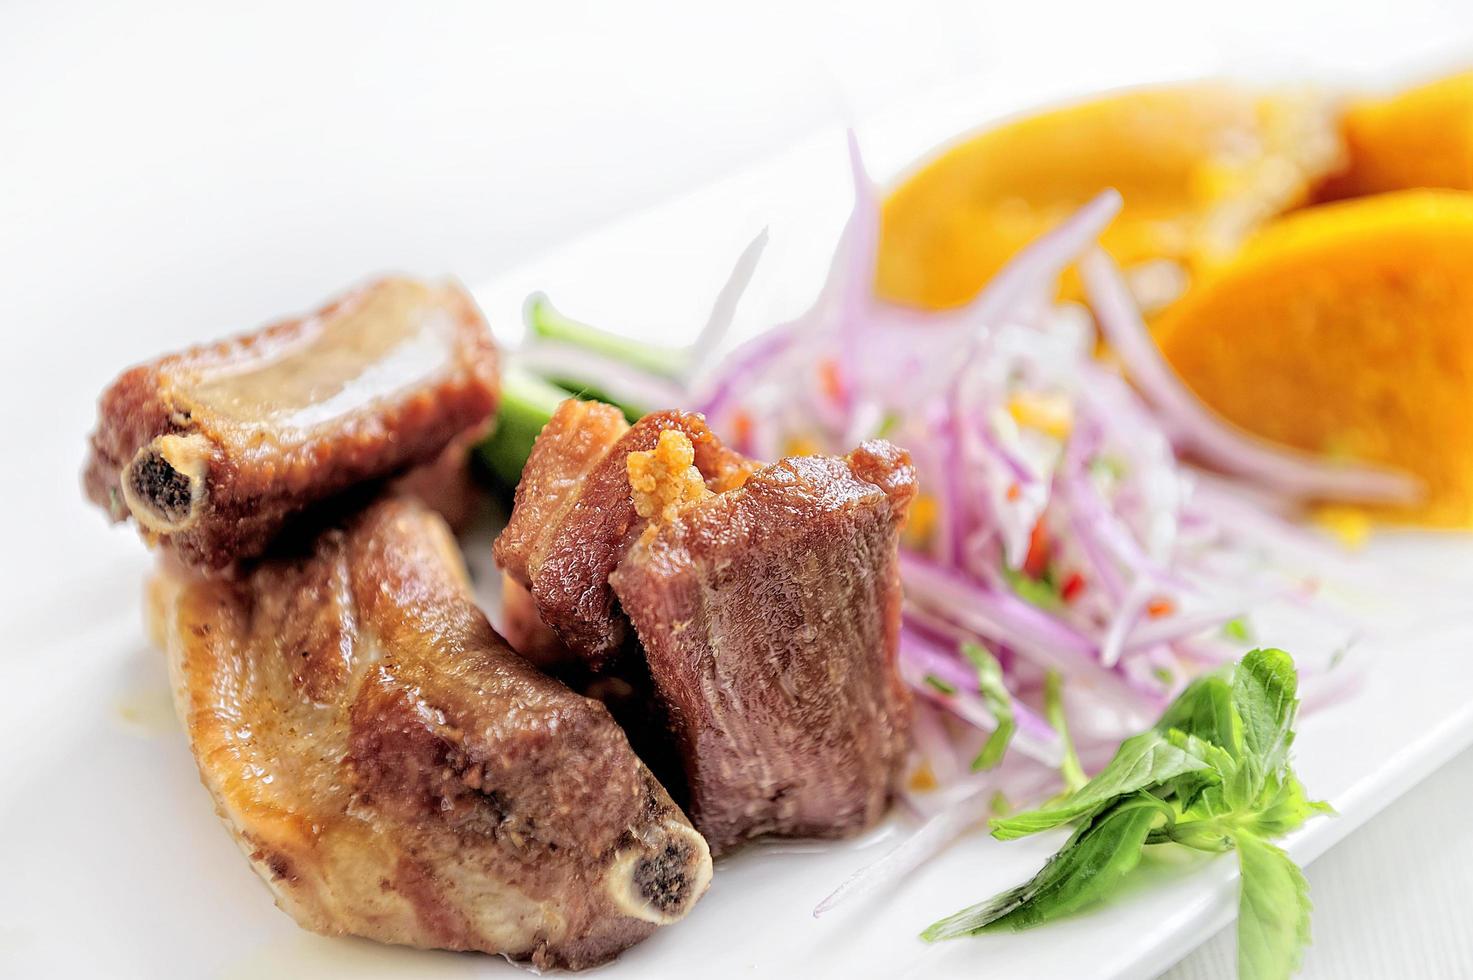 refeição tradicional peruana chamada chicharron de panceta de cerdo servida em restaurante foto